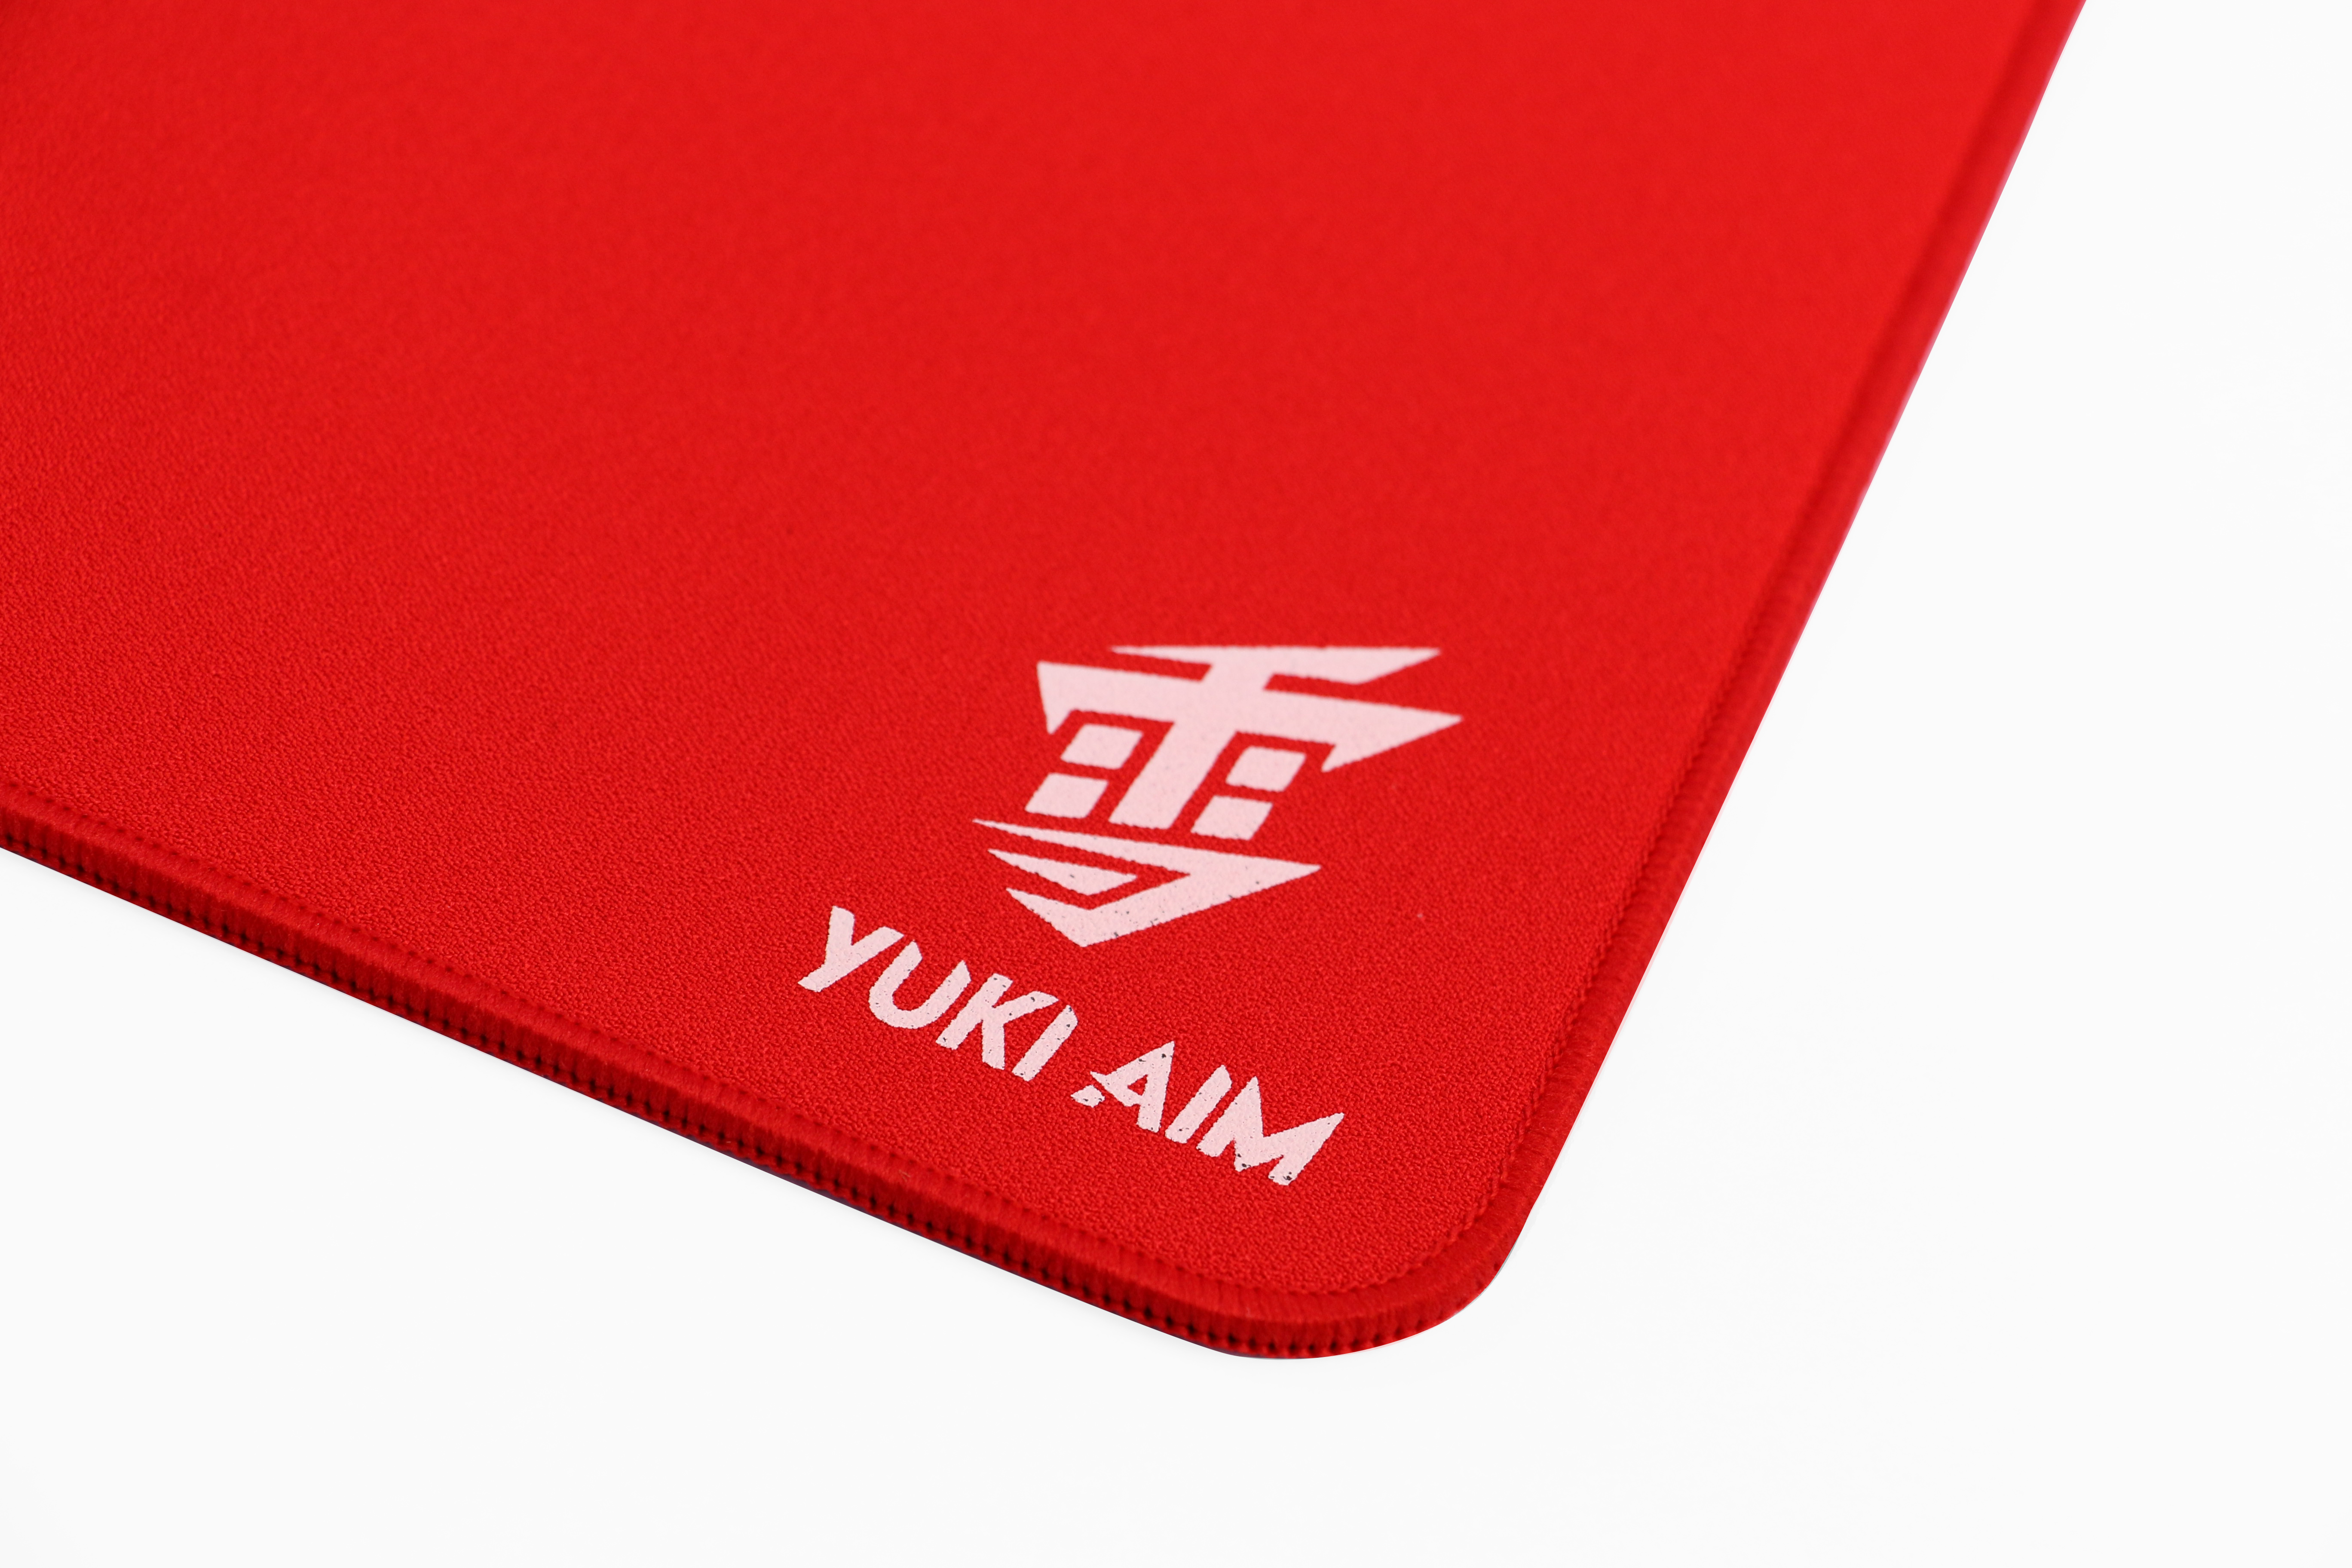 Yuki Aim - Hayai Performance Pad Limited (Red)